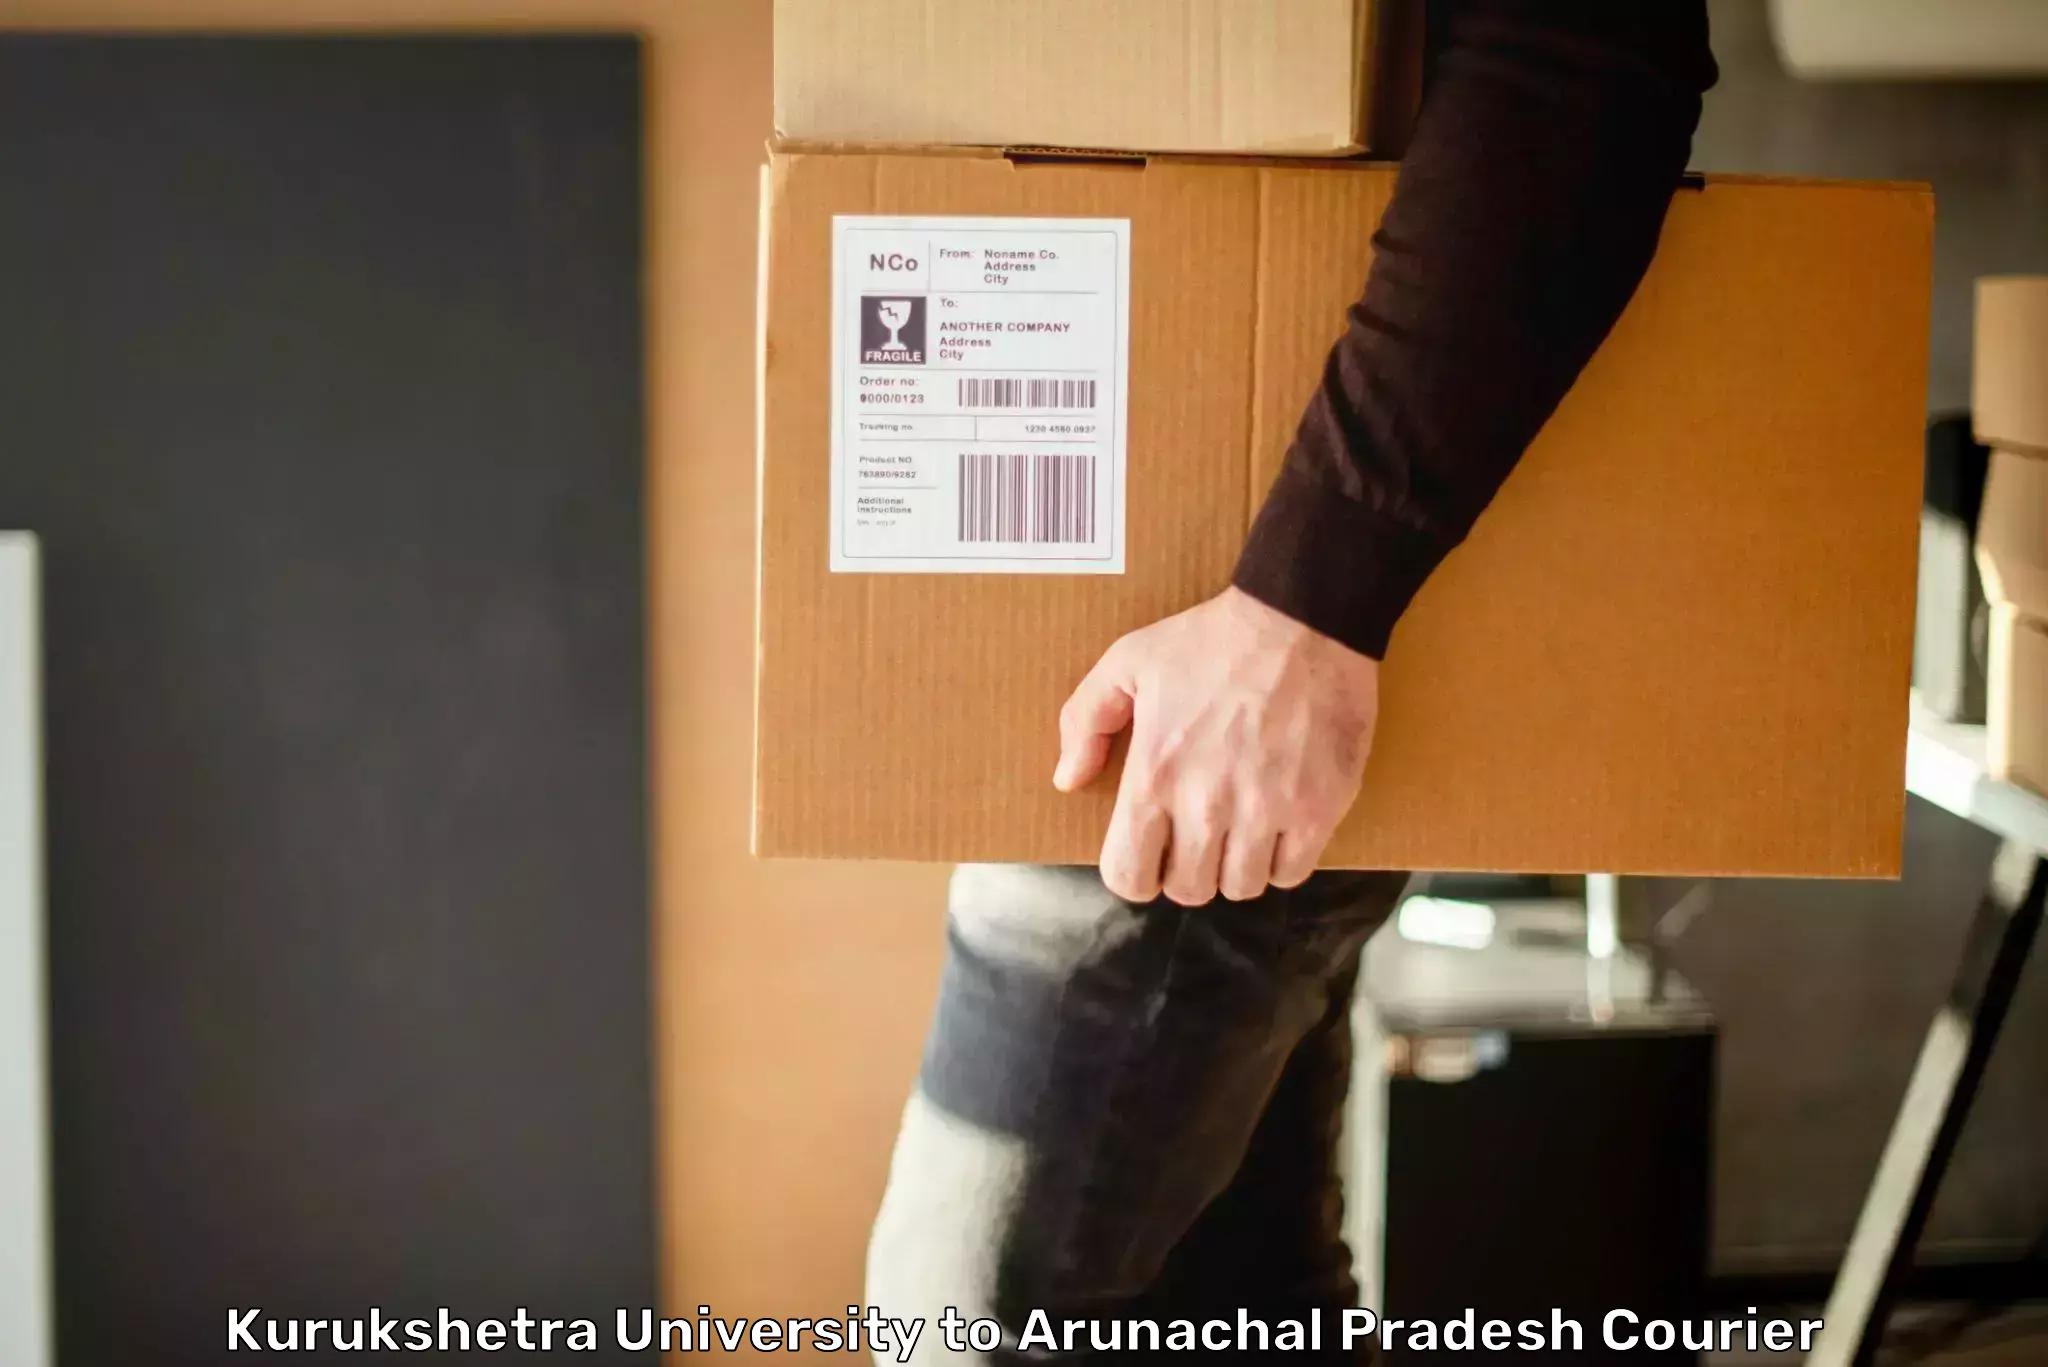 Subscription-based courier Kurukshetra University to Arunachal Pradesh